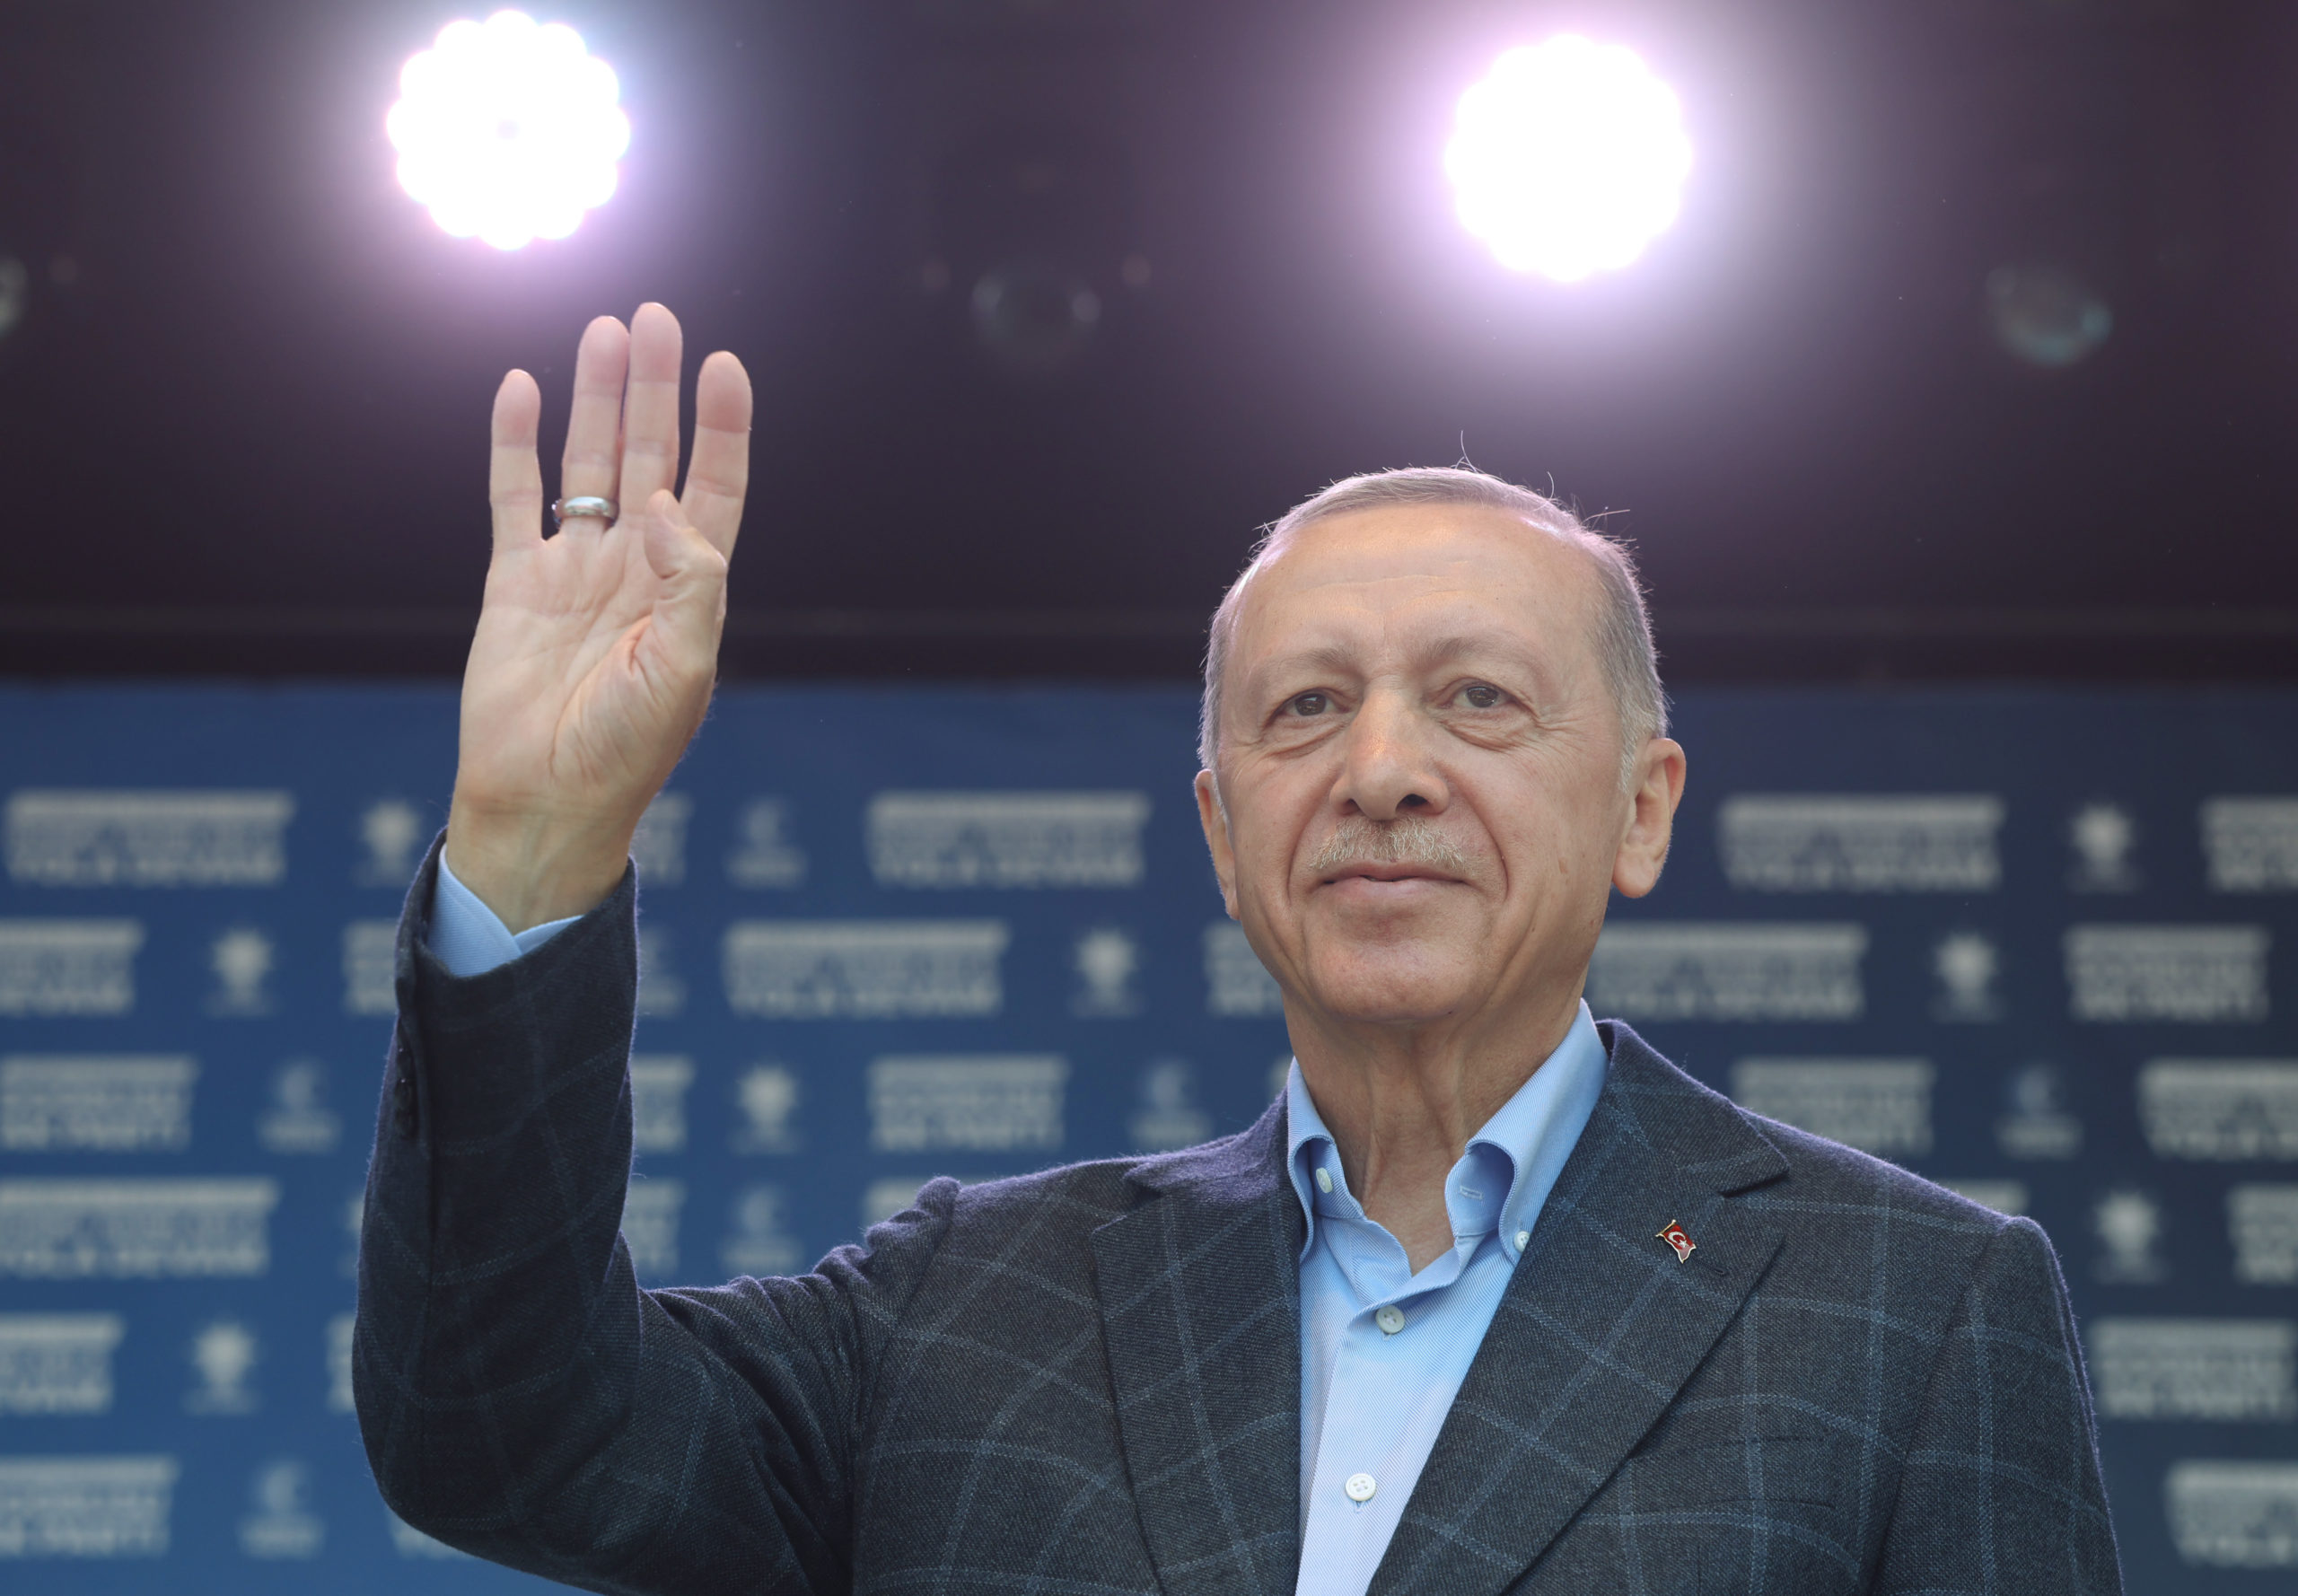  Τουρκικές εκλογές: Η πύρρειος νίκη Ερντογάν και τα δύο σενάρια για τον επόμενο γύρο